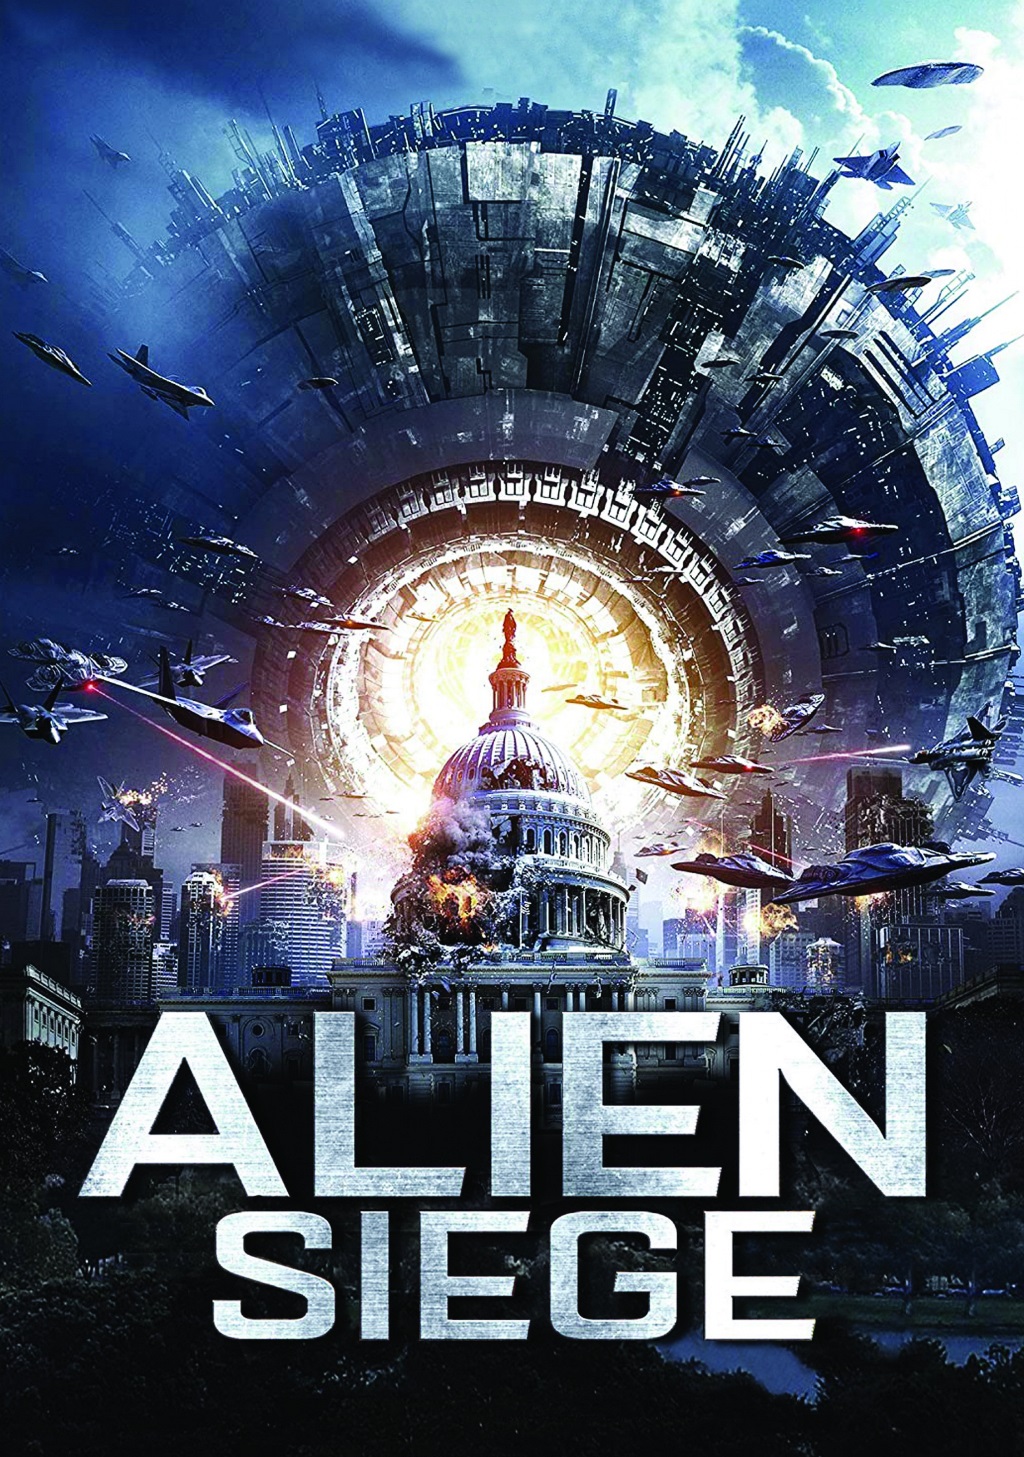 Alien Siege [HD] (2019)